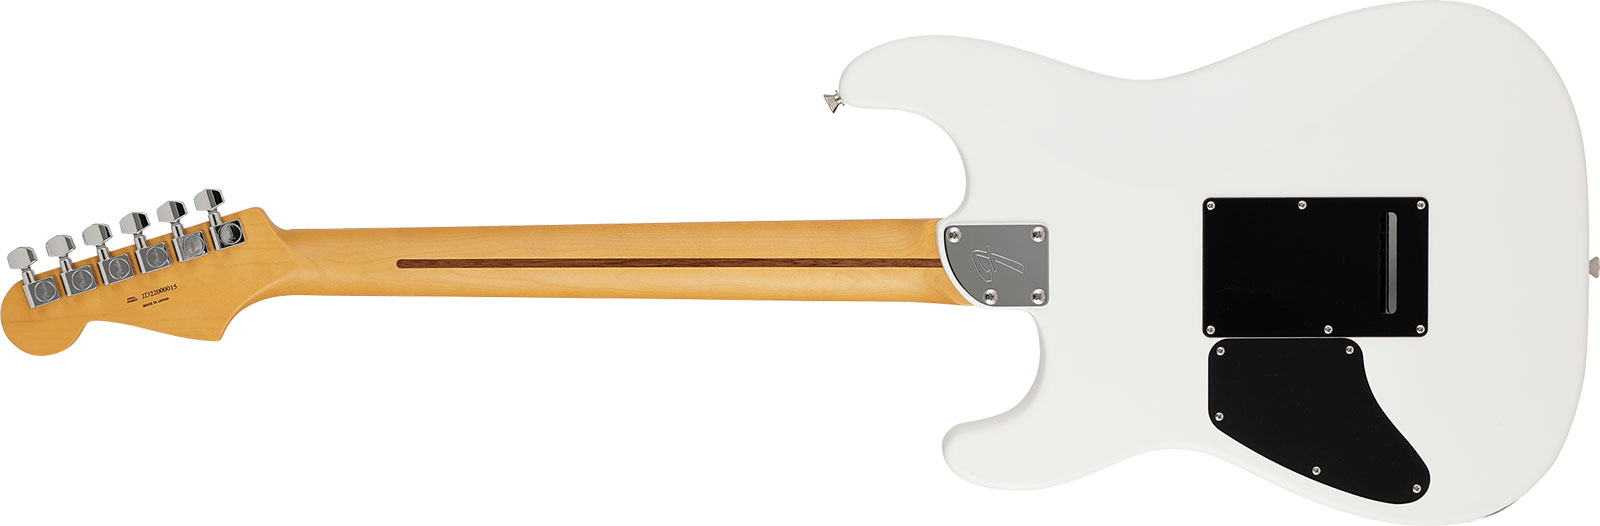 Fender Strat Elemental Mij Jap 2h Trem Rw - Nimbus White - Elektrische gitaar in Str-vorm - Variation 1